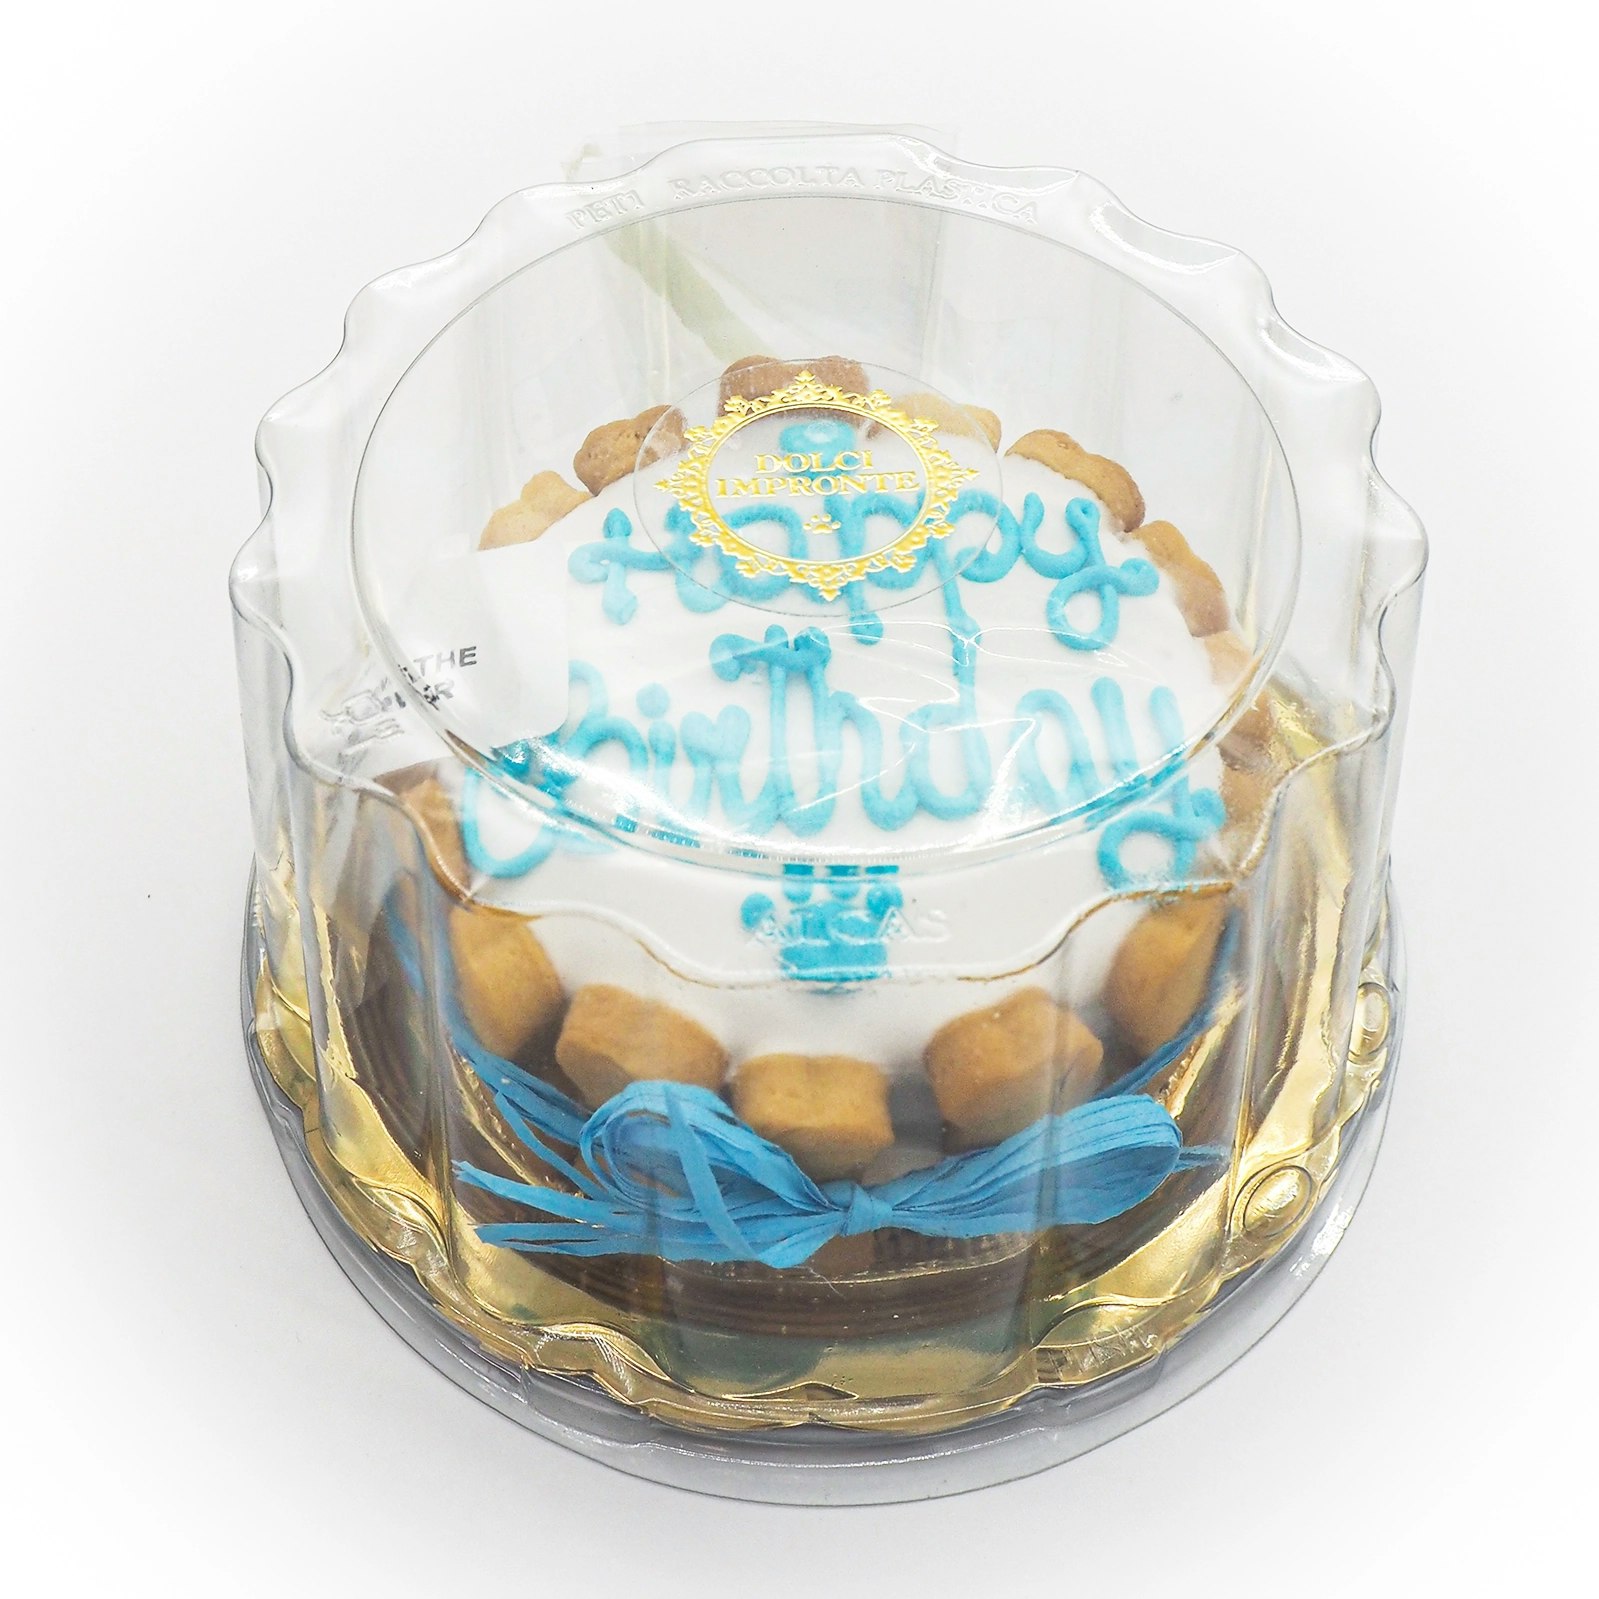 Dolci Impronte® Birthday Cake Baby Blue